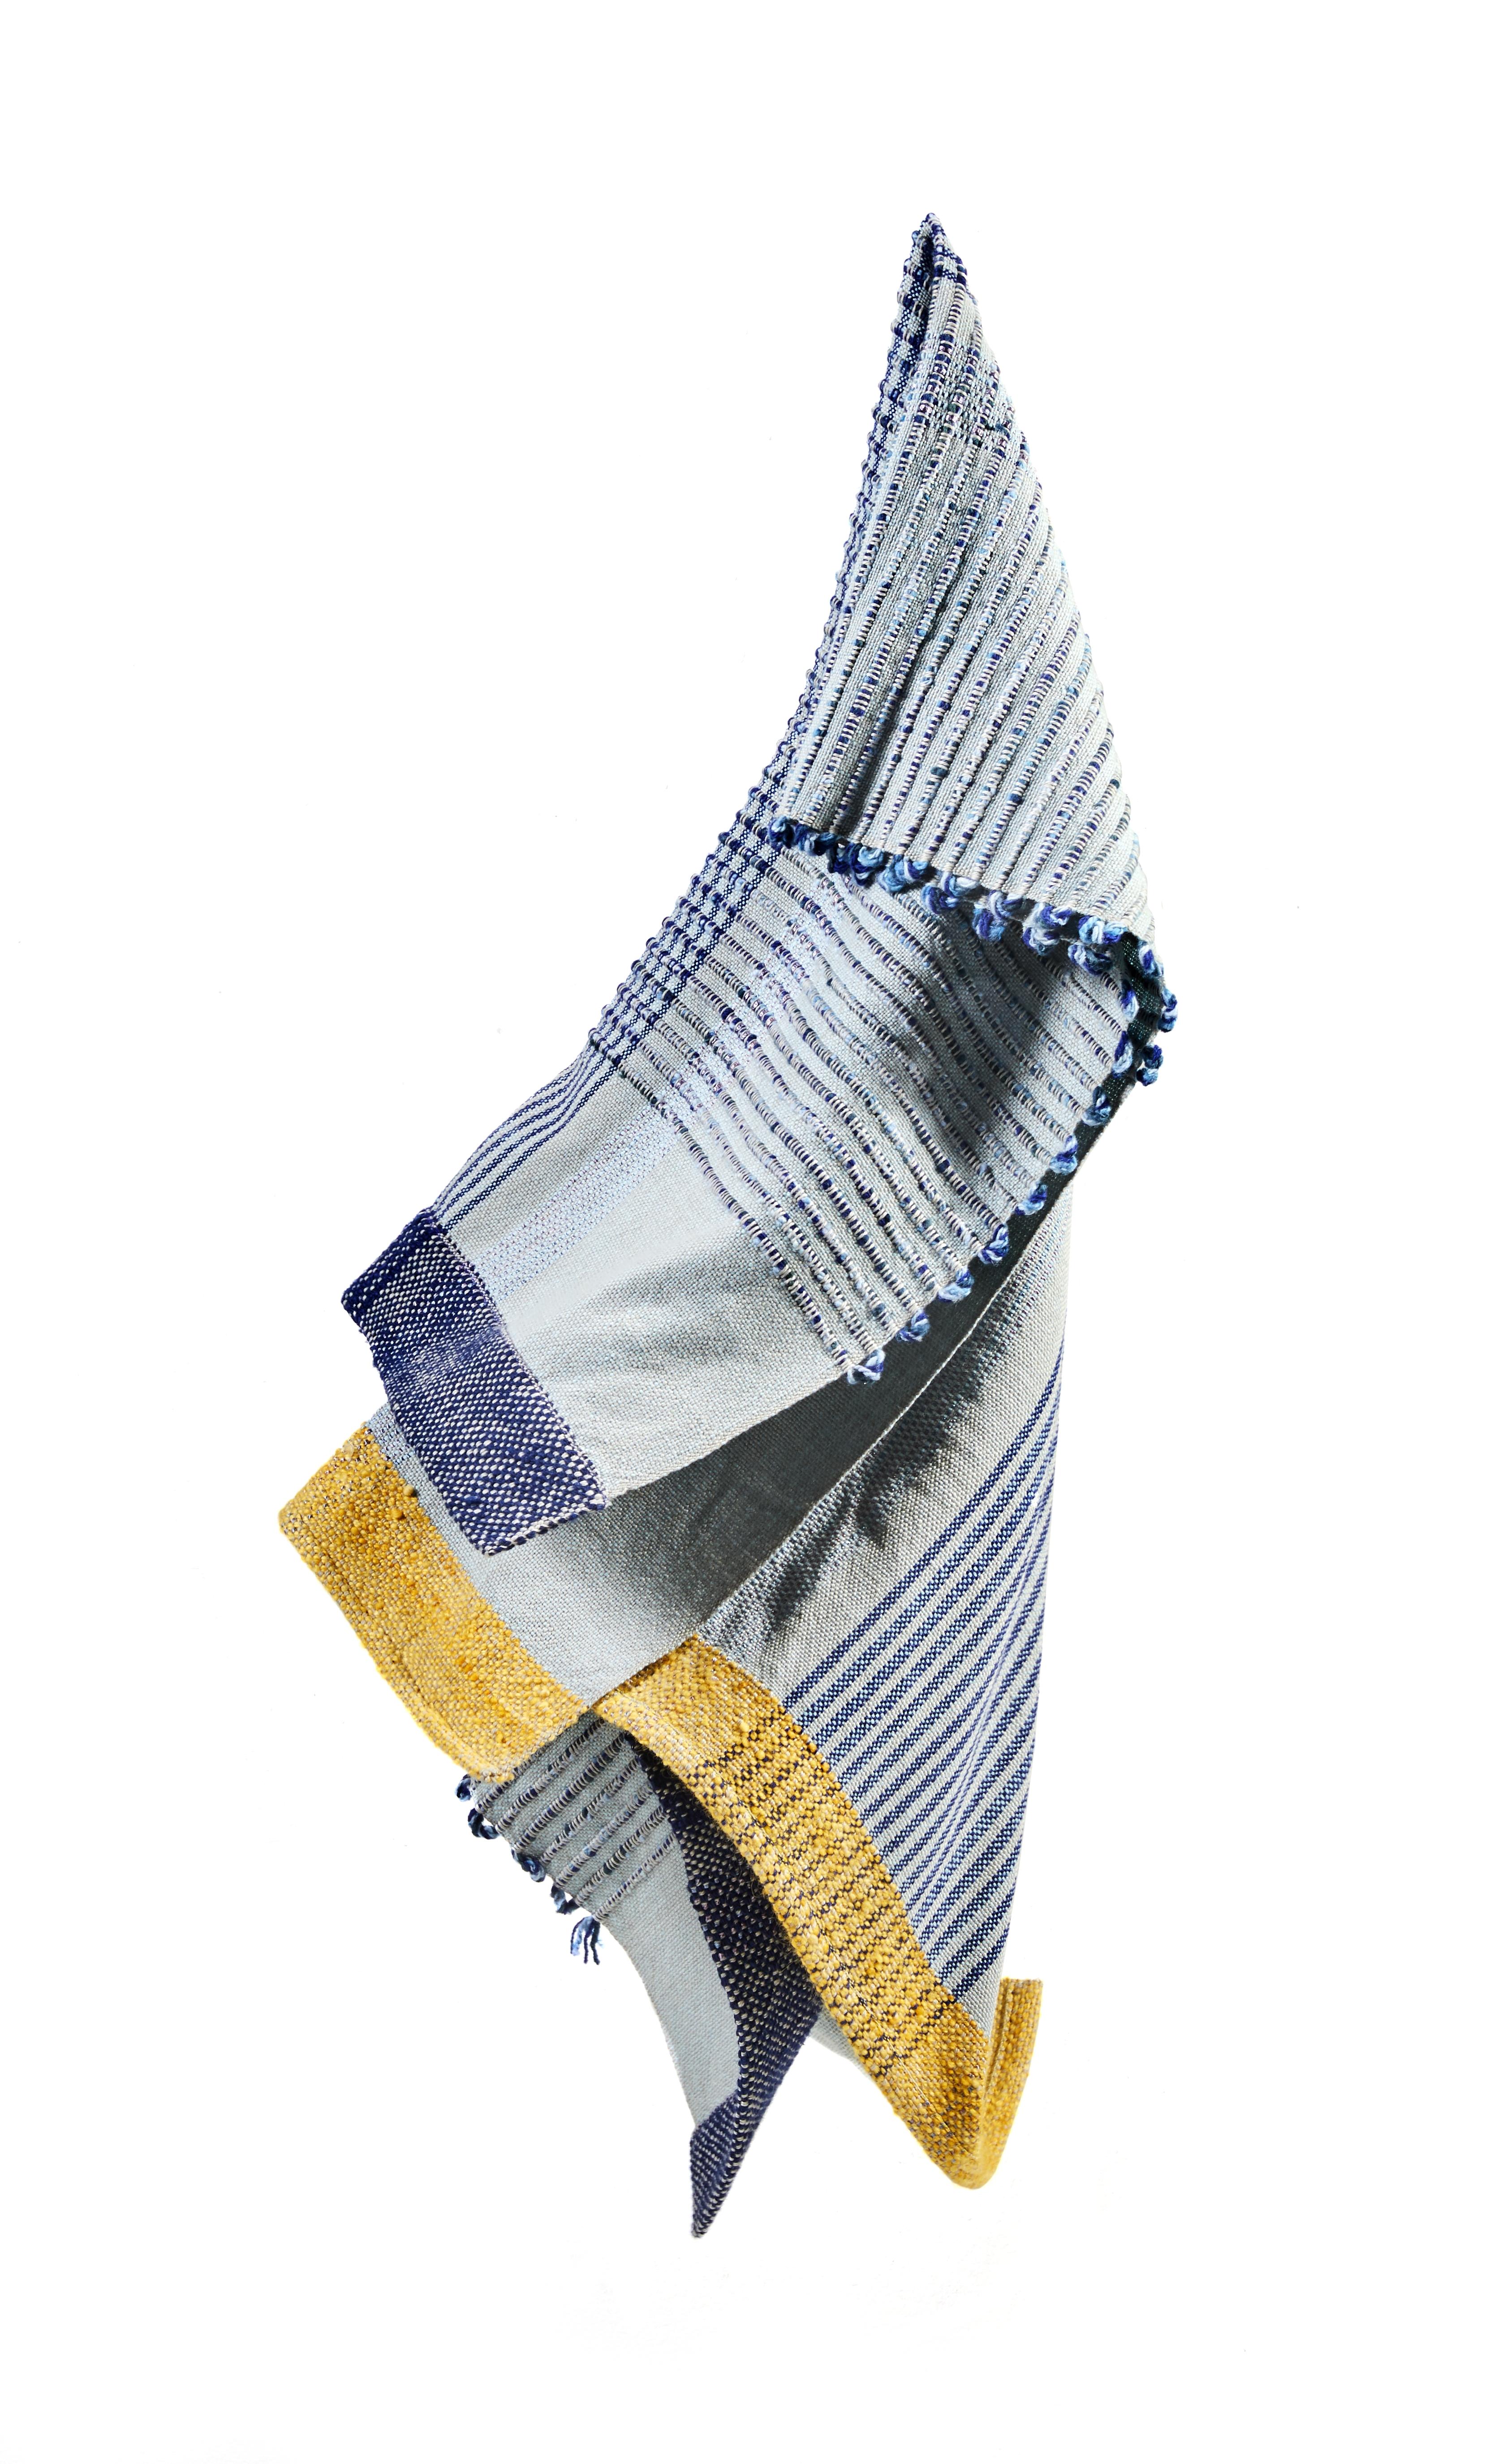 Kaugummi-Decke 1 von Mae Engelgeer
MATERIALIEN: 100% Baumwolle. 
Technik: handgewebt in Kolumbien. 
Abmessungen: B 200 x H 120 cm 
Erhältlich in den Farben: Blau/Banane/Silber und Terrakotta/Lavendel/Gold.

Die Chumbes-Decke ist ein kuscheliges